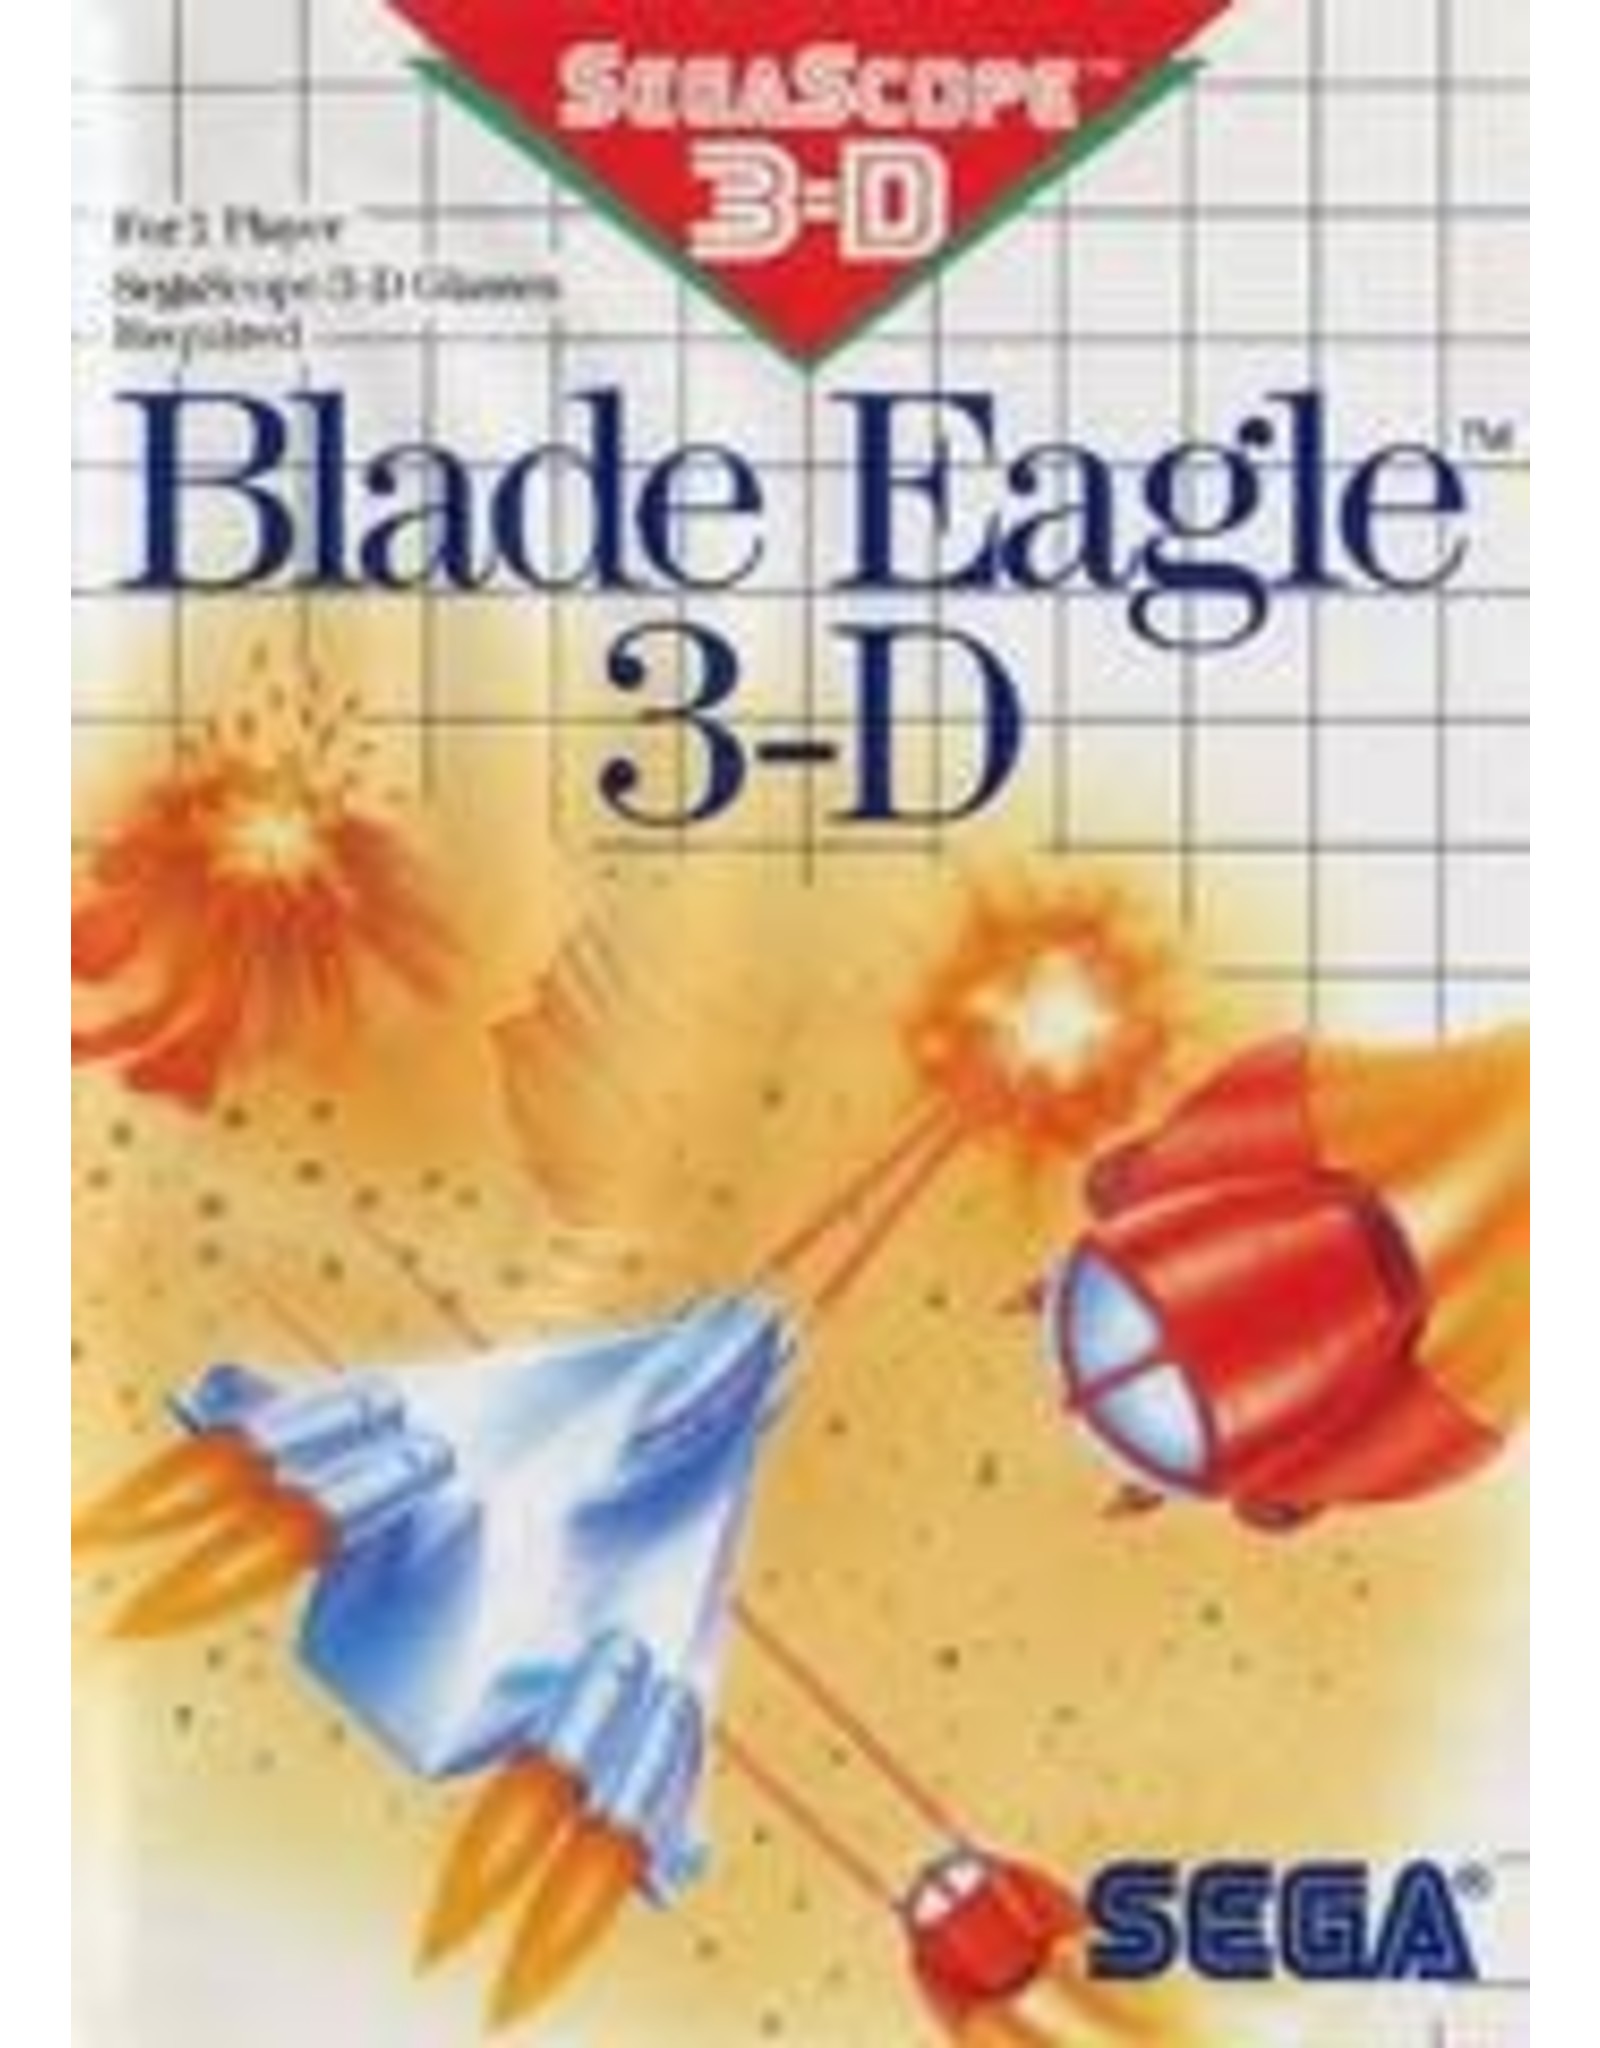 Sega Master System Blade Eagle 3D (Cart only)